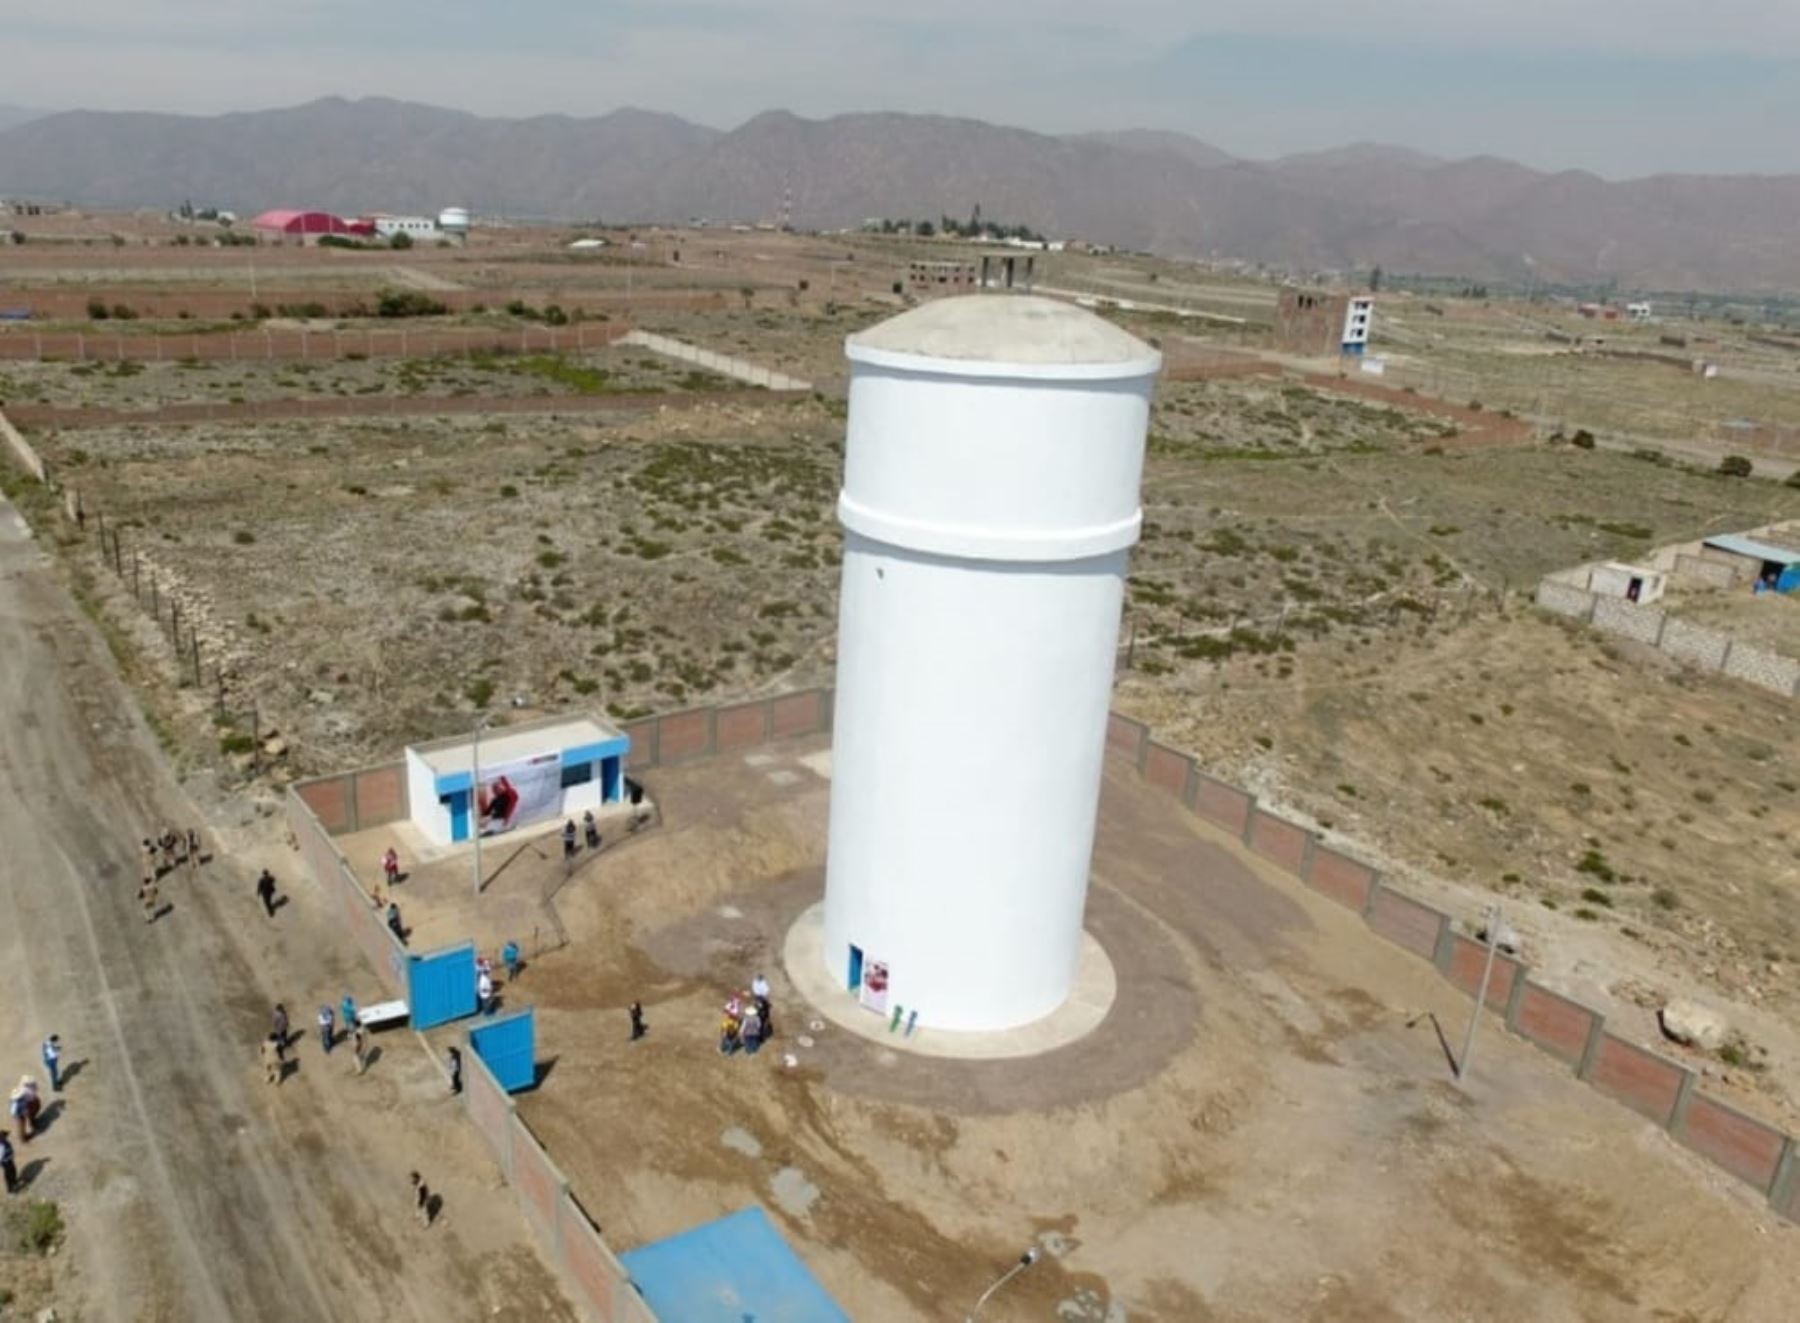 Más de 4,800 vecinos de Sabandía, en la región Arequipa, contarán con servicios de agua potable y alcantarillado gracias a un proyecto del Ministerio de Vivienda, Construcción y Saneamiento.